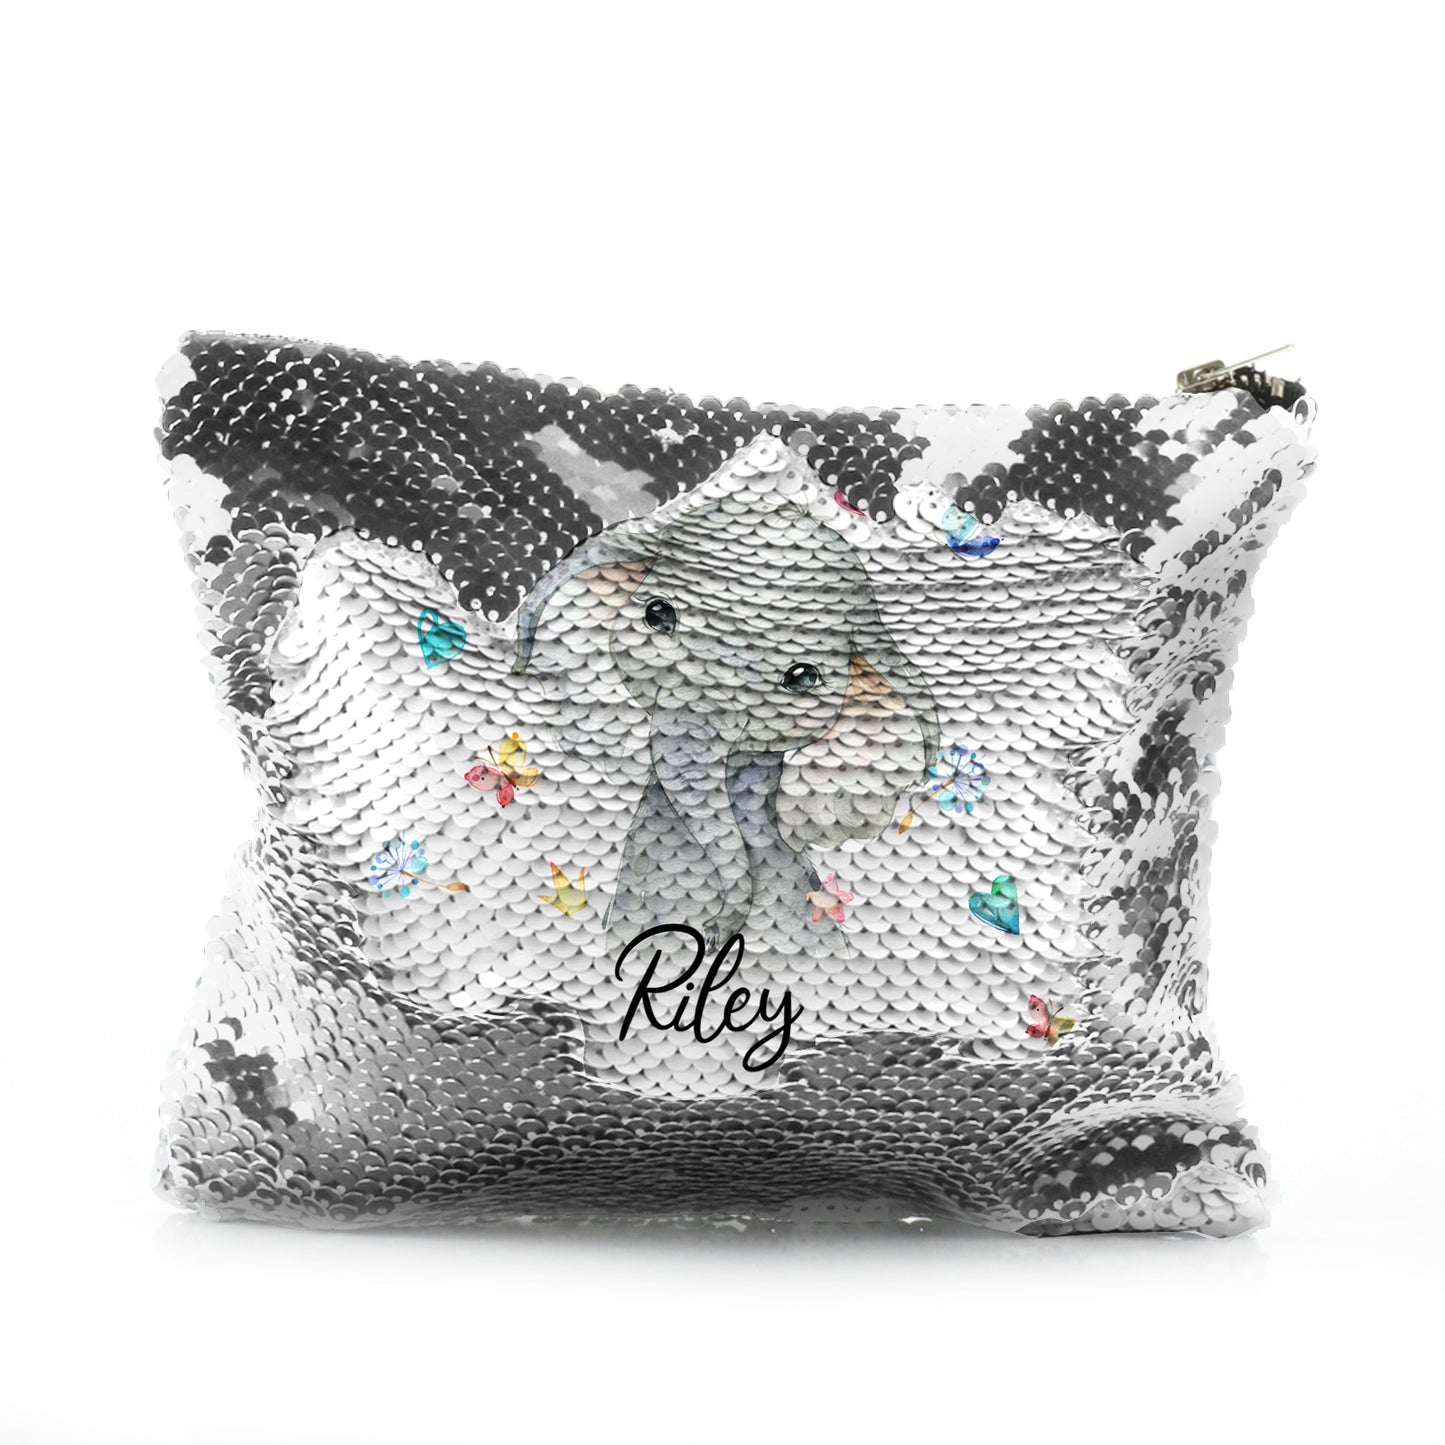 Personalisierte Pailletten-Reißverschlusstasche mit grauem Elefanten mit Herzen, Sternen, Kronen, Schmetterling und süßem Text